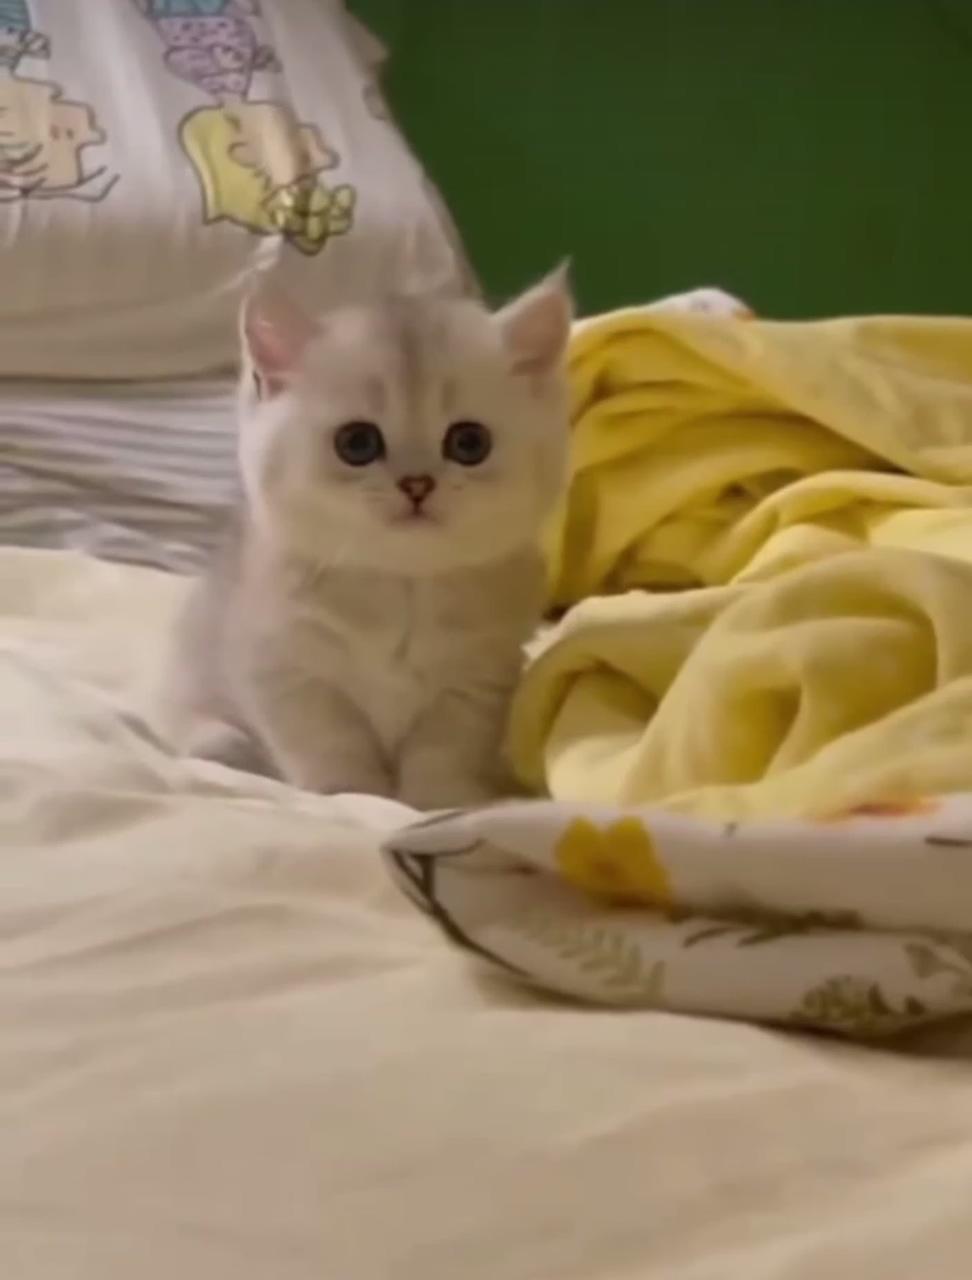 Cute cat videos ; cute cat gif